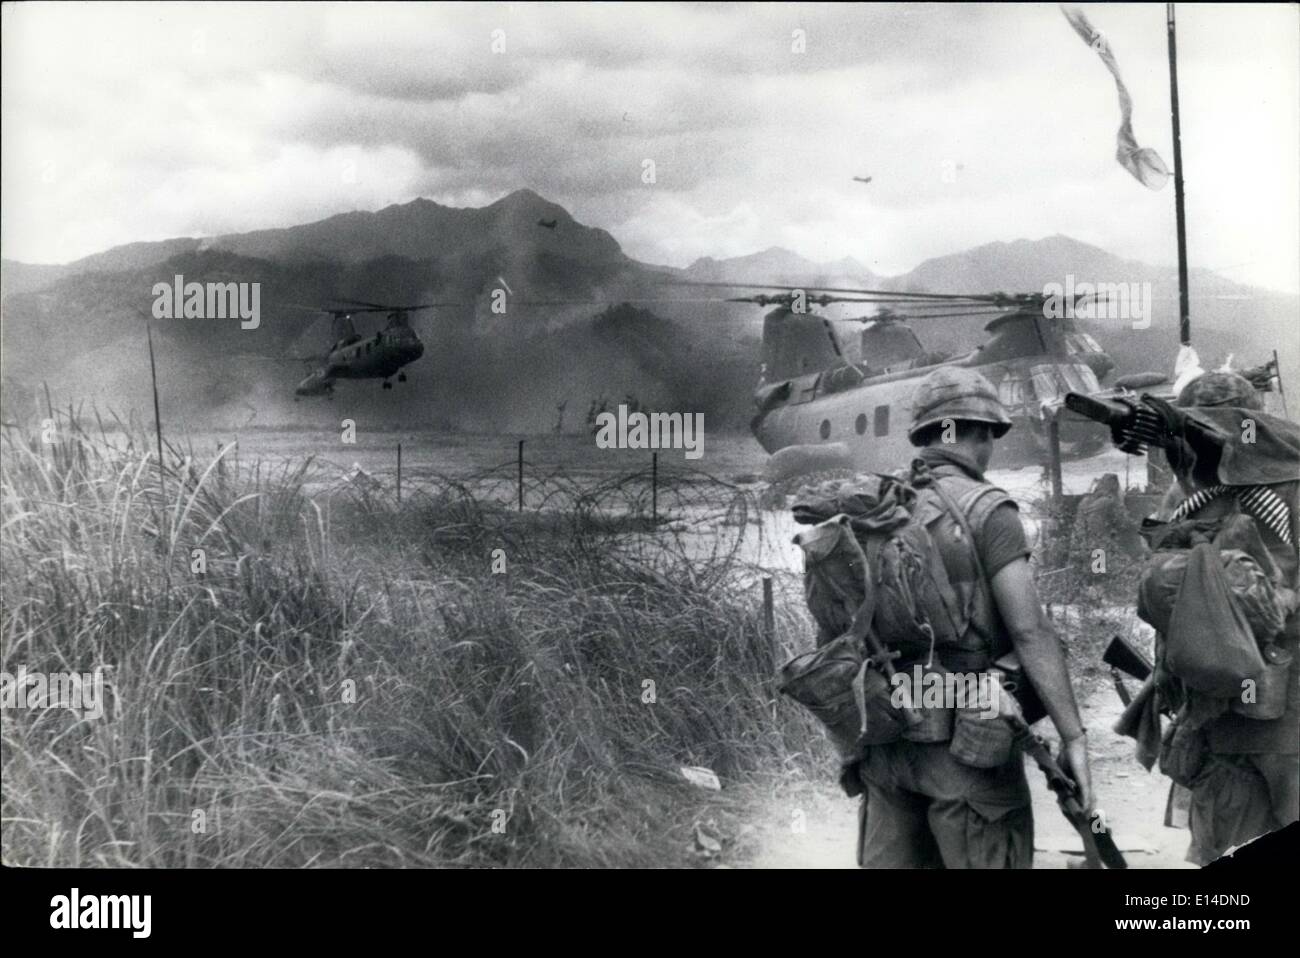 Apr. 18, 2012 - I passeggeri aerei di combattimento. Marines americani si muovono in una pista di atterraggio per aerei vicino alla pila di rocce nell'angolo più settentrionale del Vietnam, e poco più a sud della zona demilitarizzata, per essere trasferito in aereo elicotteri per un combattimento sweep operazione denominata Lancaster 11, contro il vietnamita del nord le truppe di infiltrazione. Foto Stock